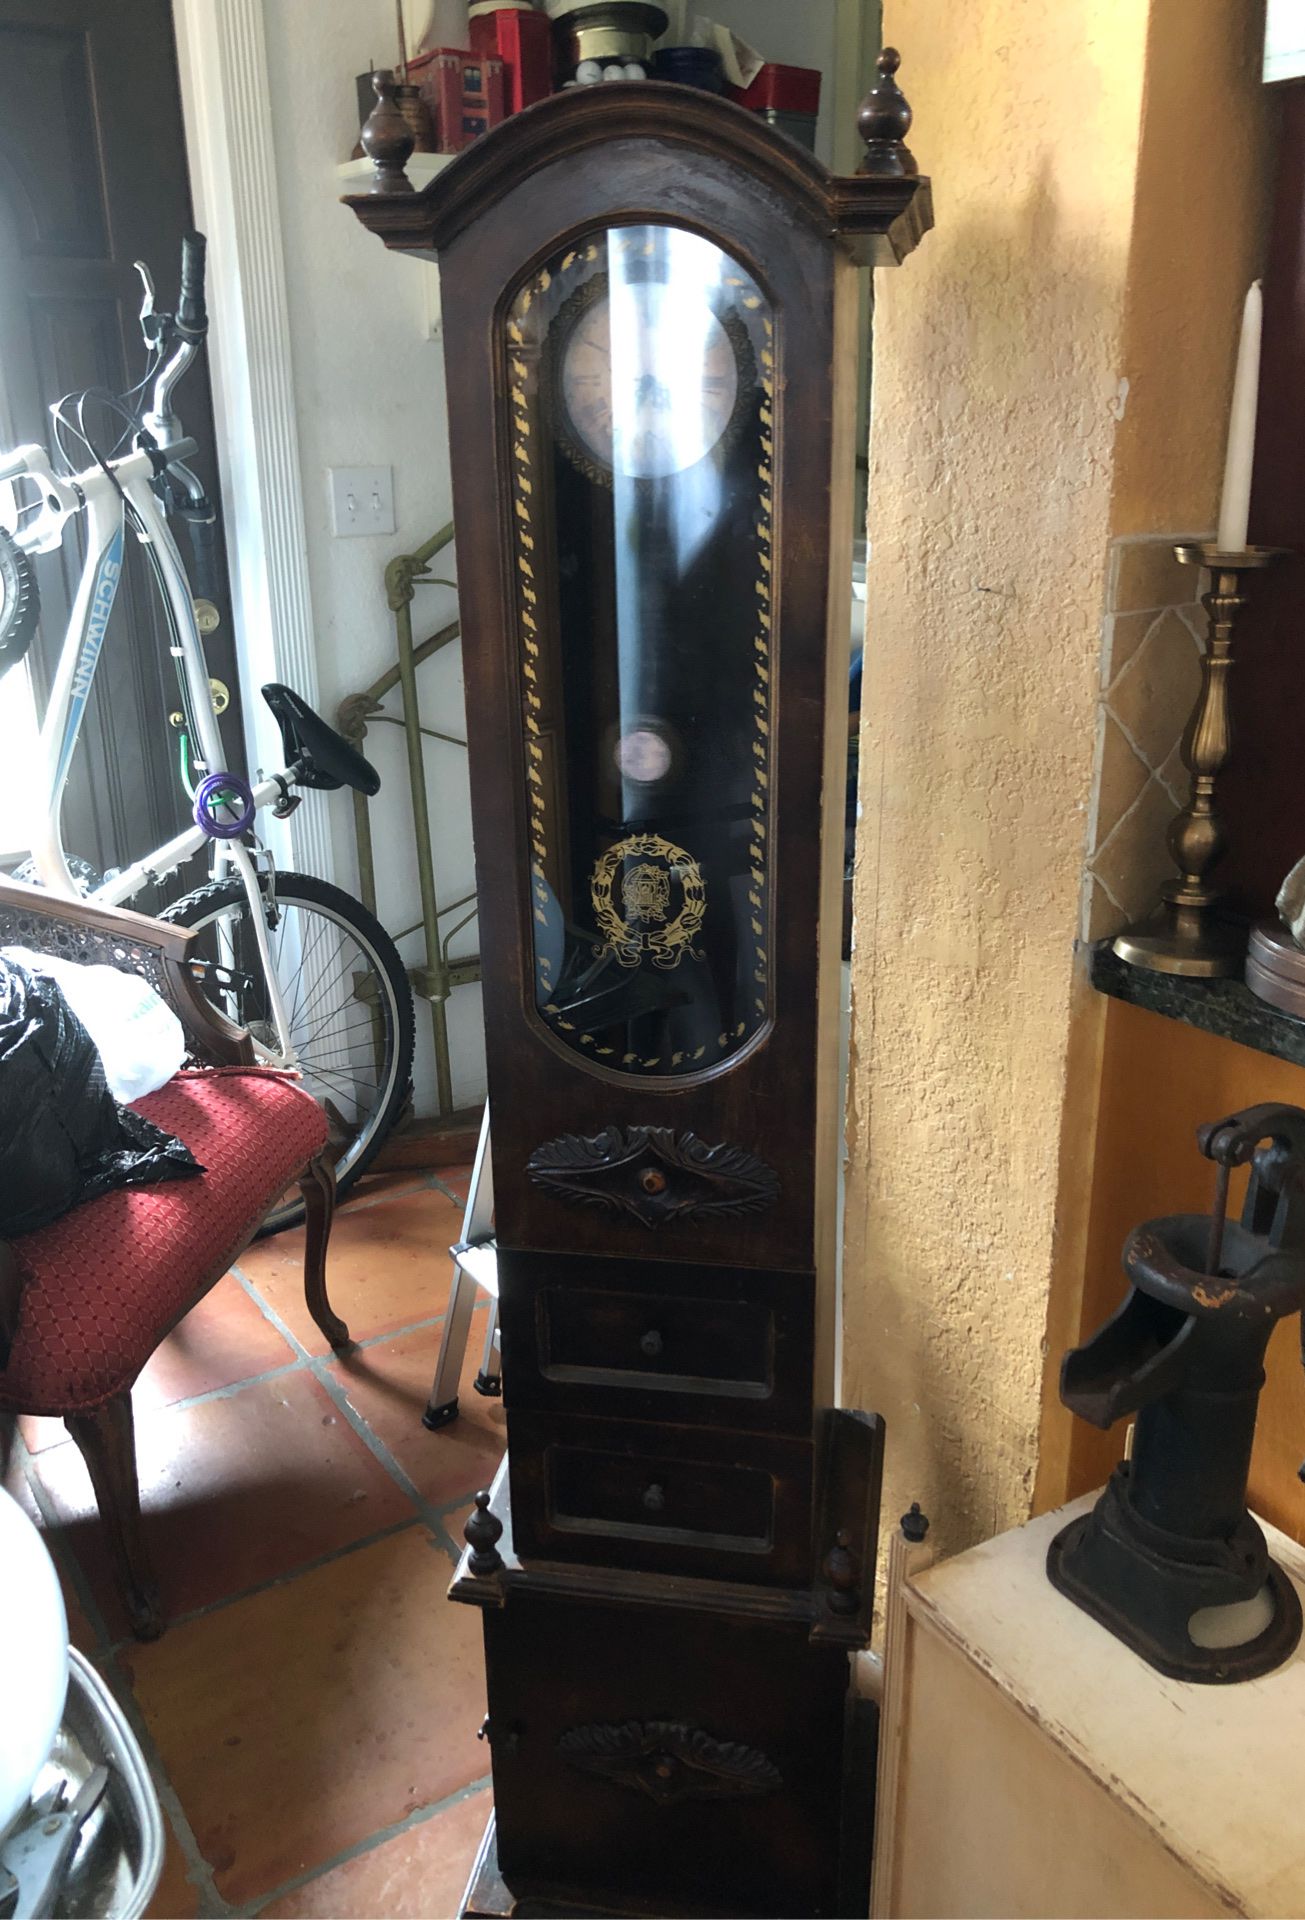 Reproduction Antique Floor Clock